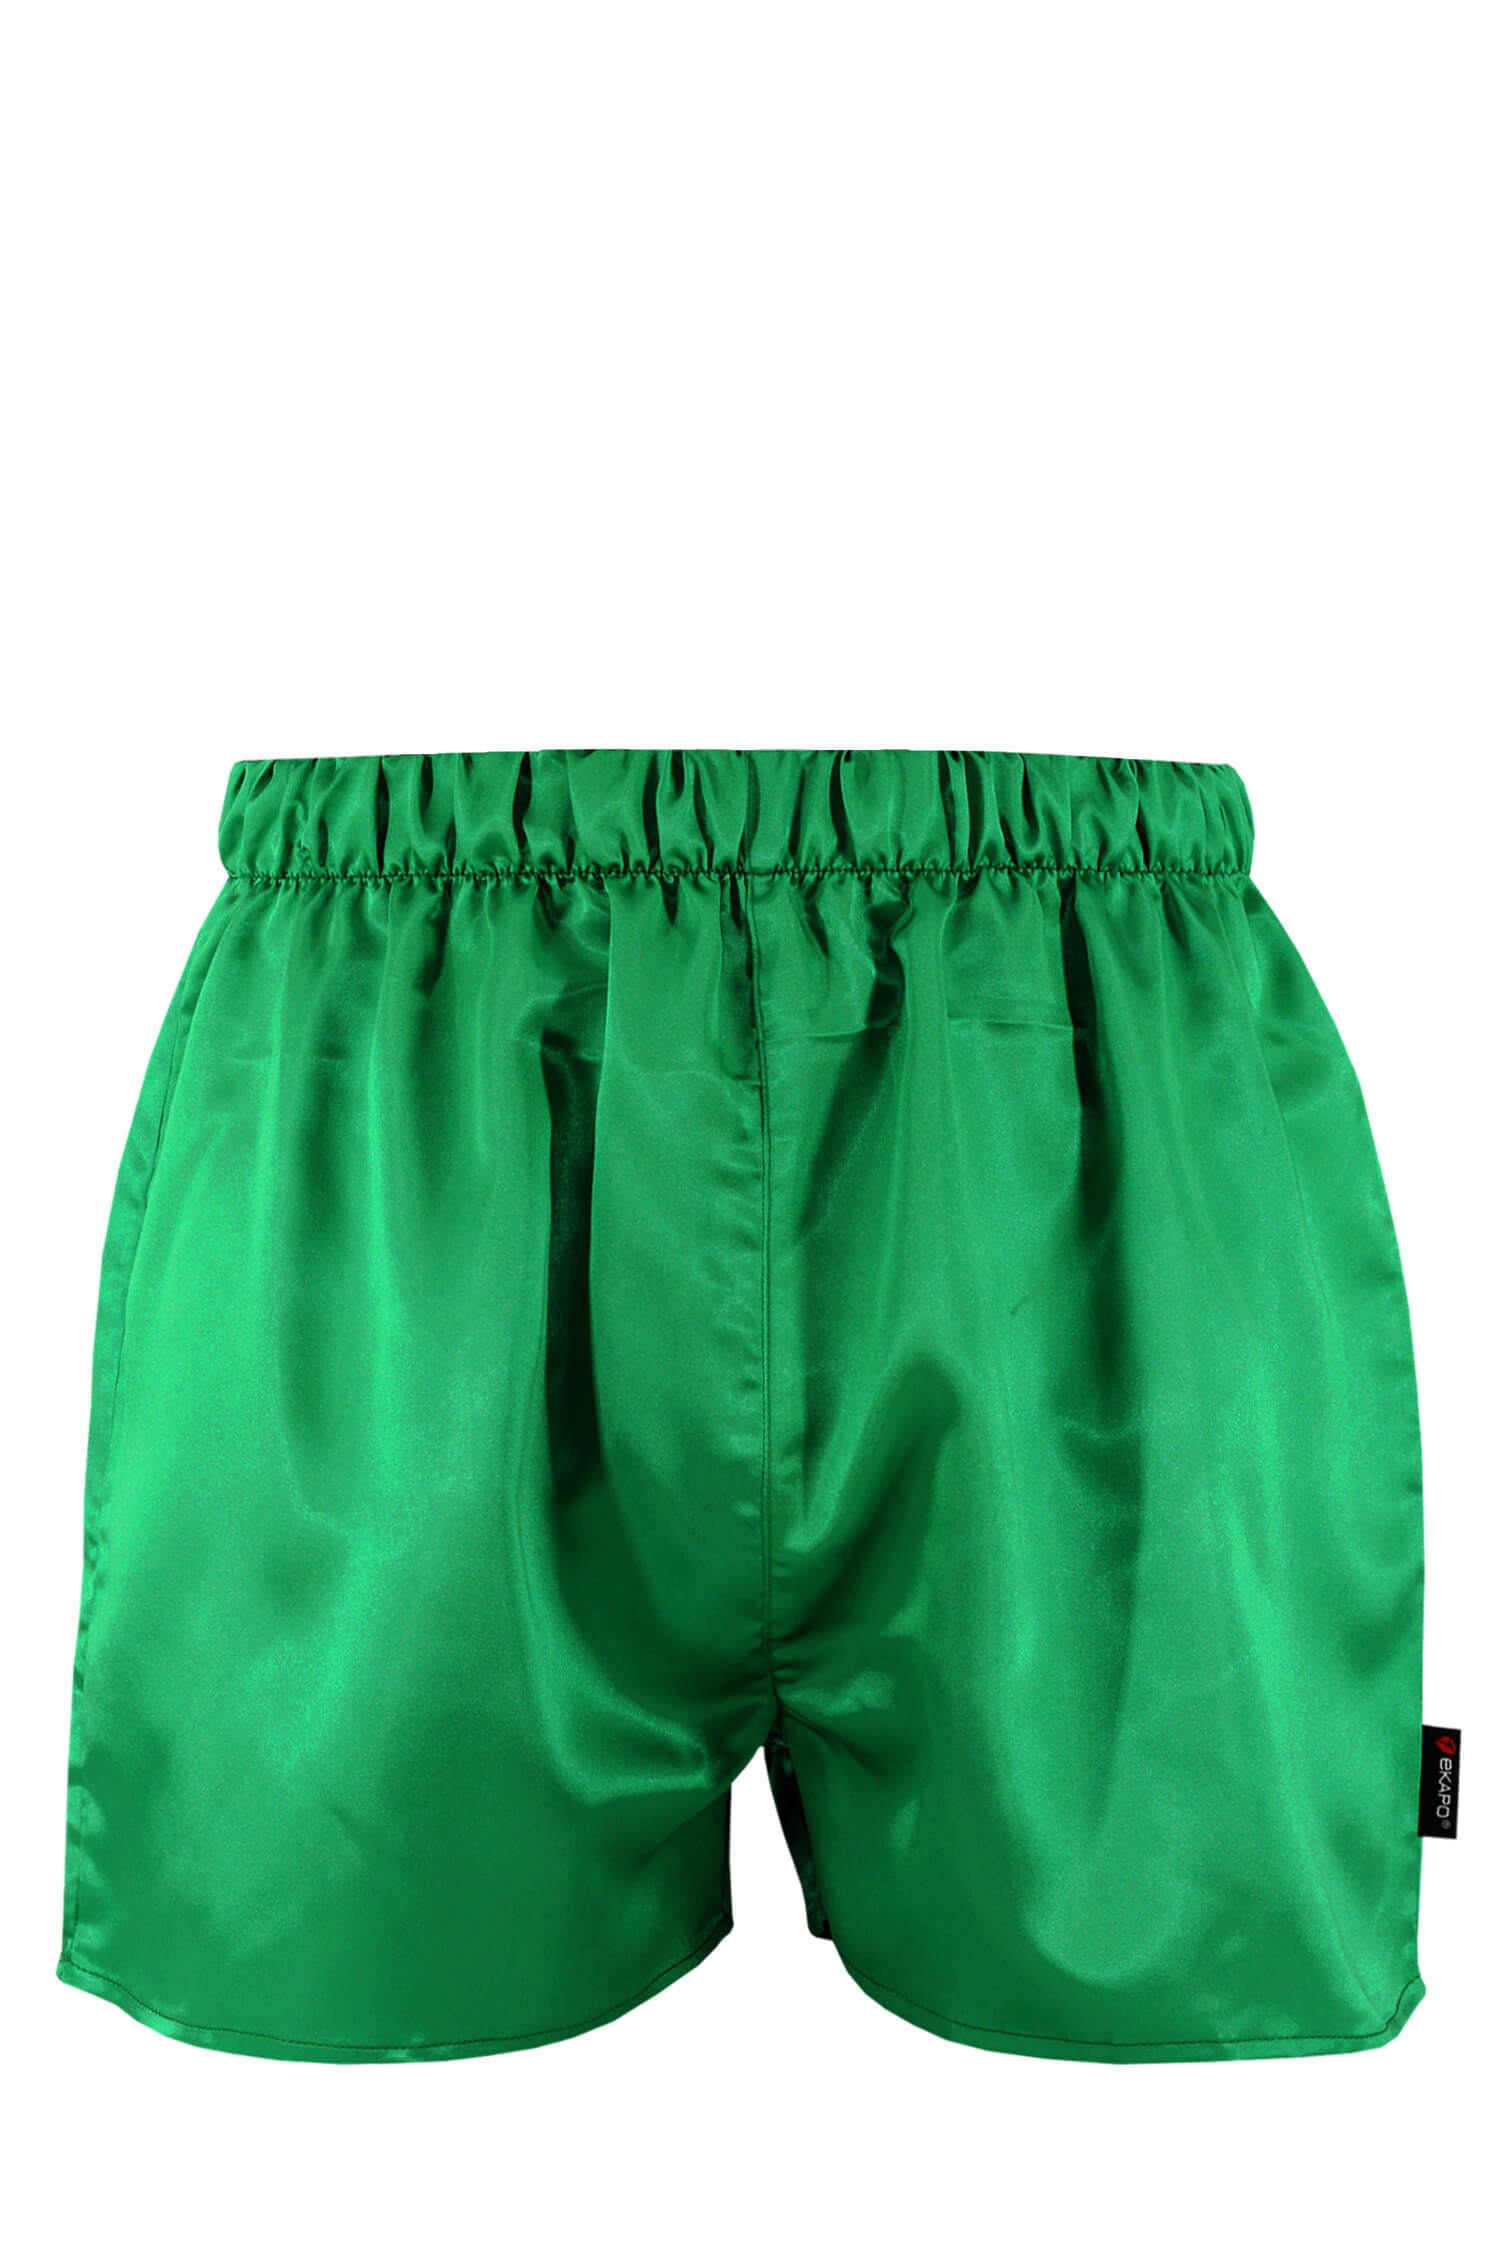 Cool Atila pánské saténové trenýrky XL zelená